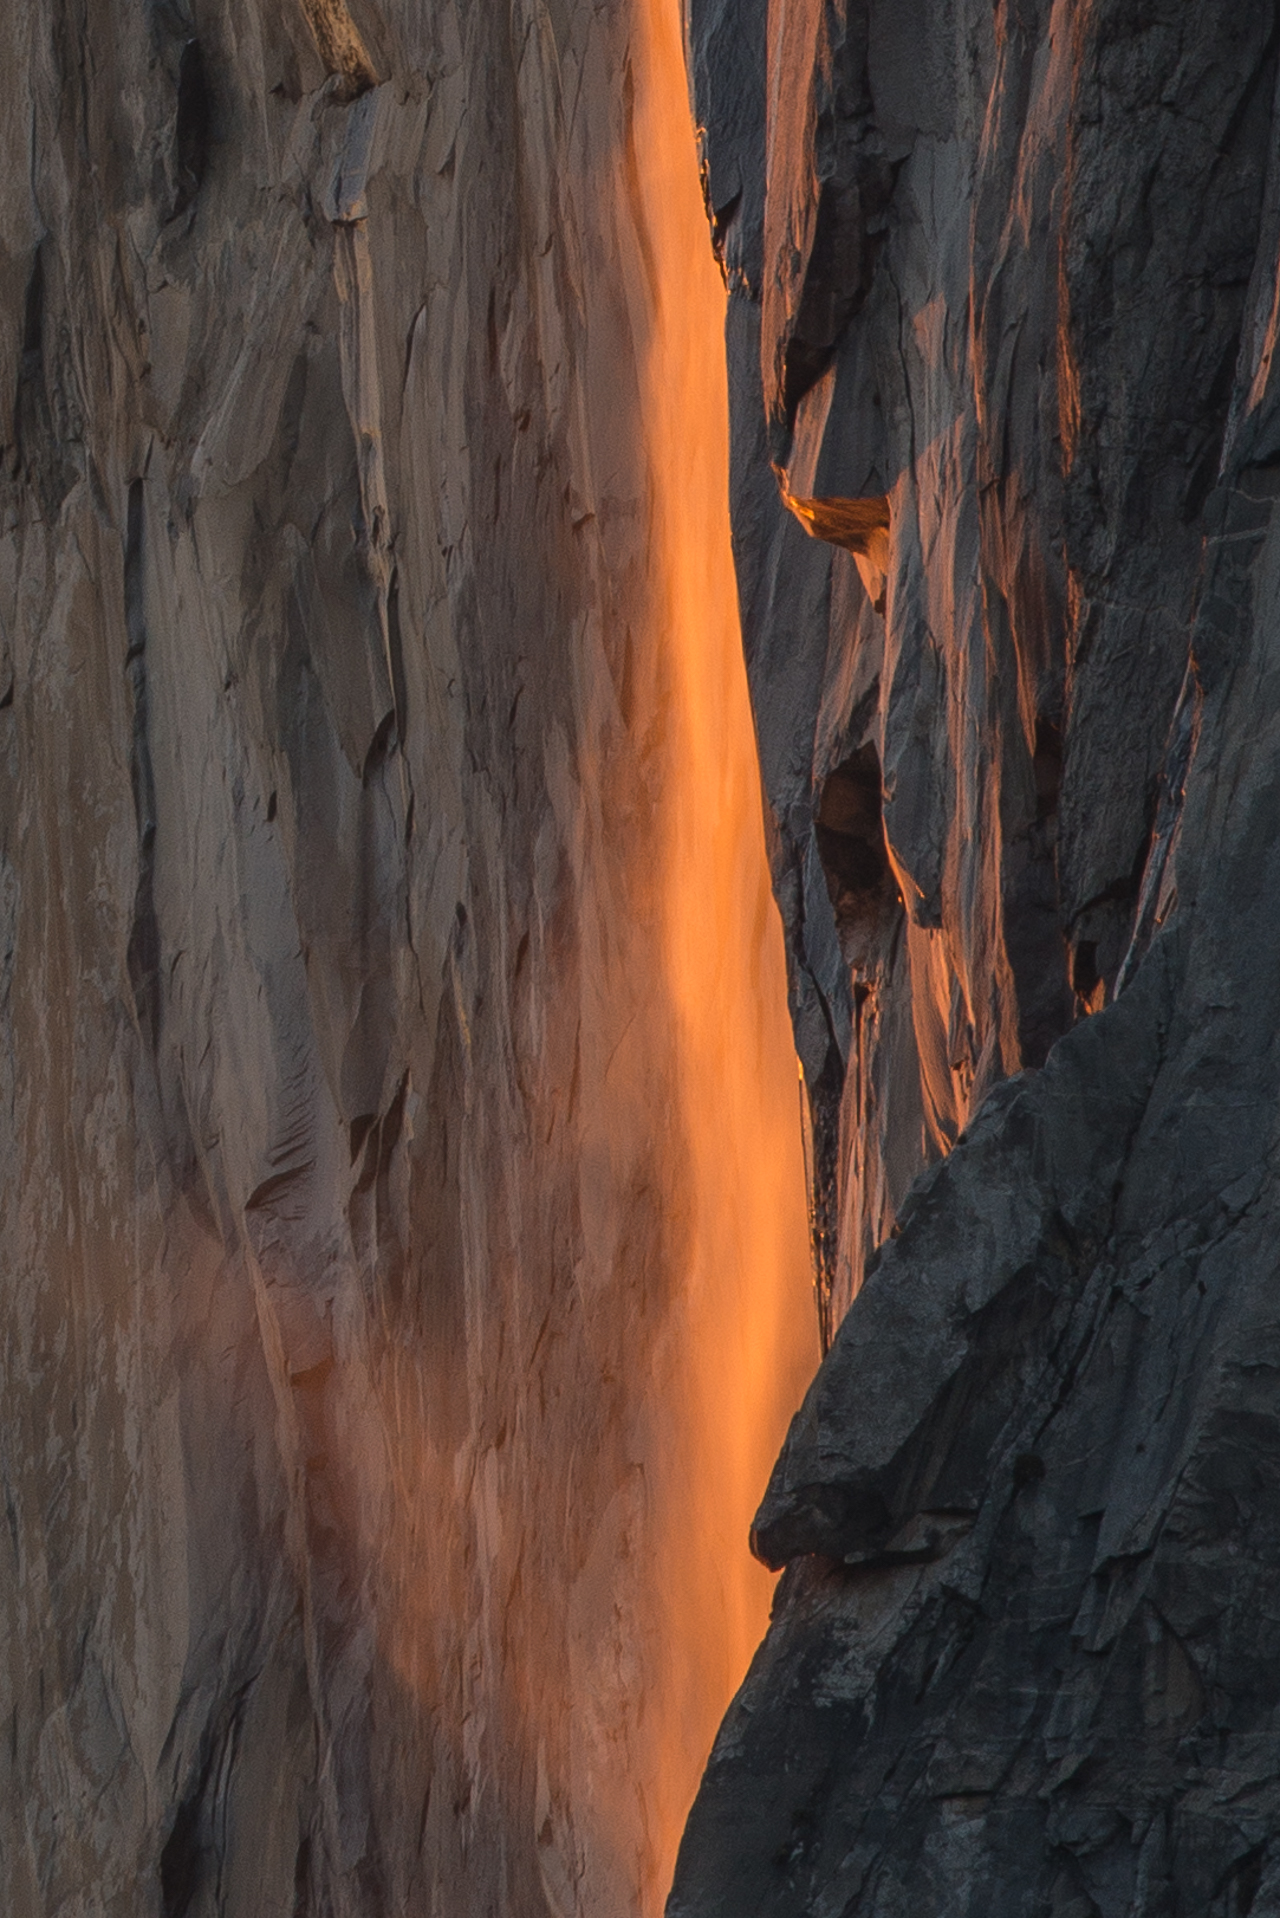 Yosemite Firefall-6